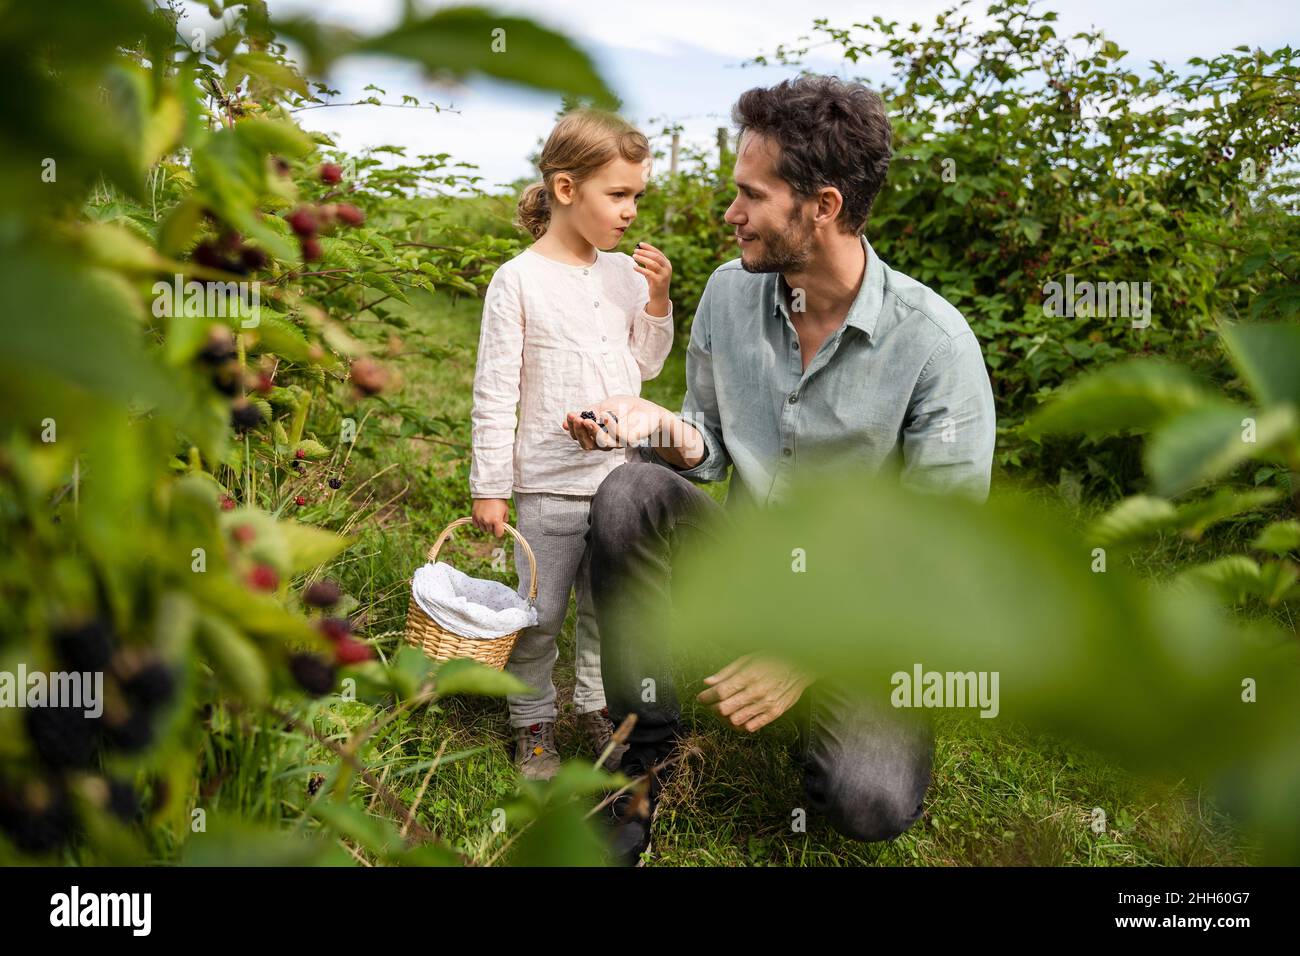 Mann, der die Tochter ansieht, die im Obstgarten Beeren isst Stockfoto